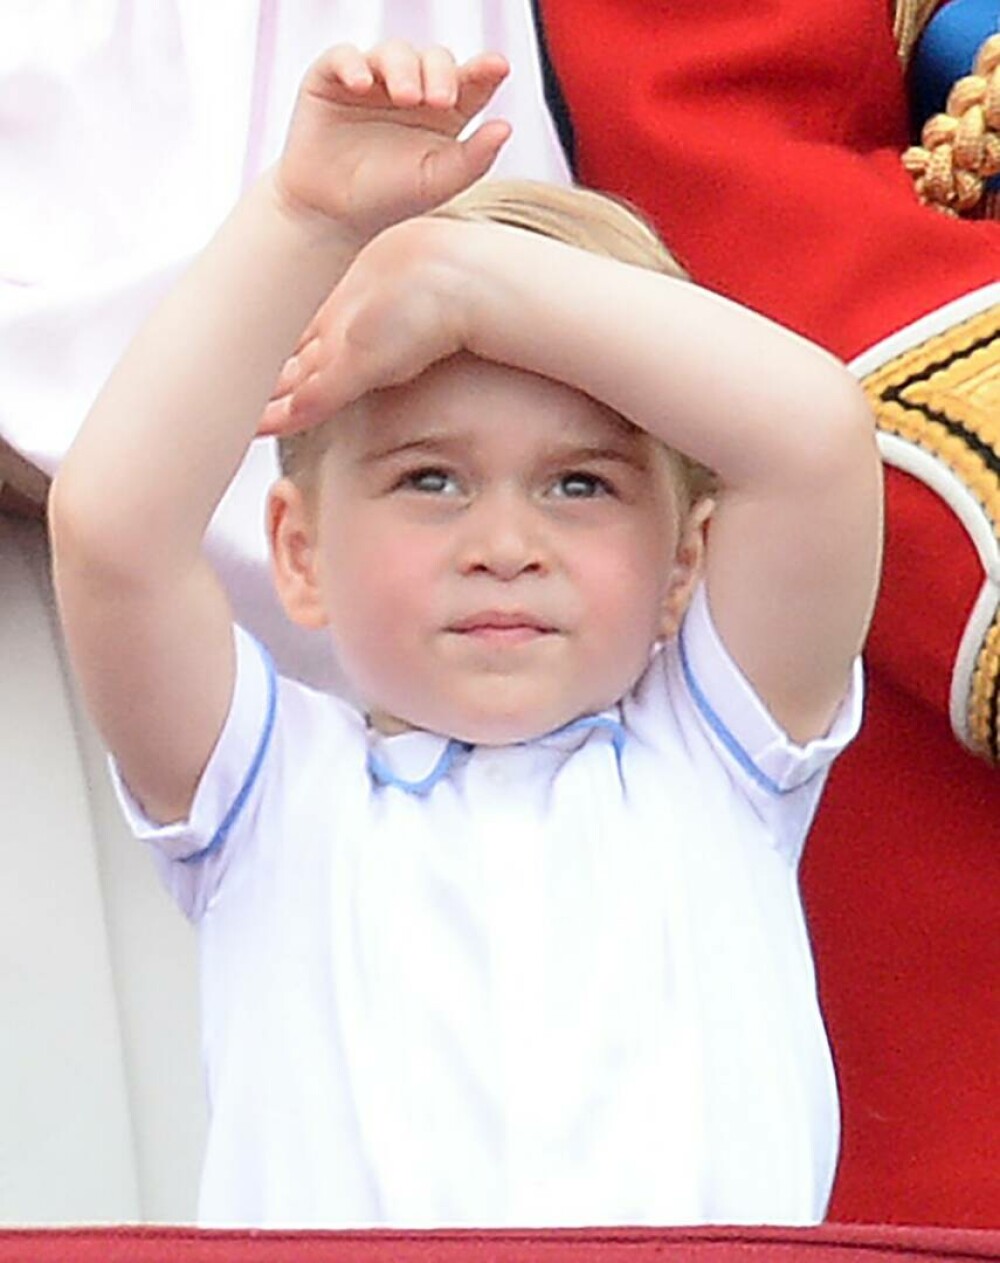 Prințul George împlinește 9 ani. Viața sa în imagini - GALERIE FOTO - Imaginea 2